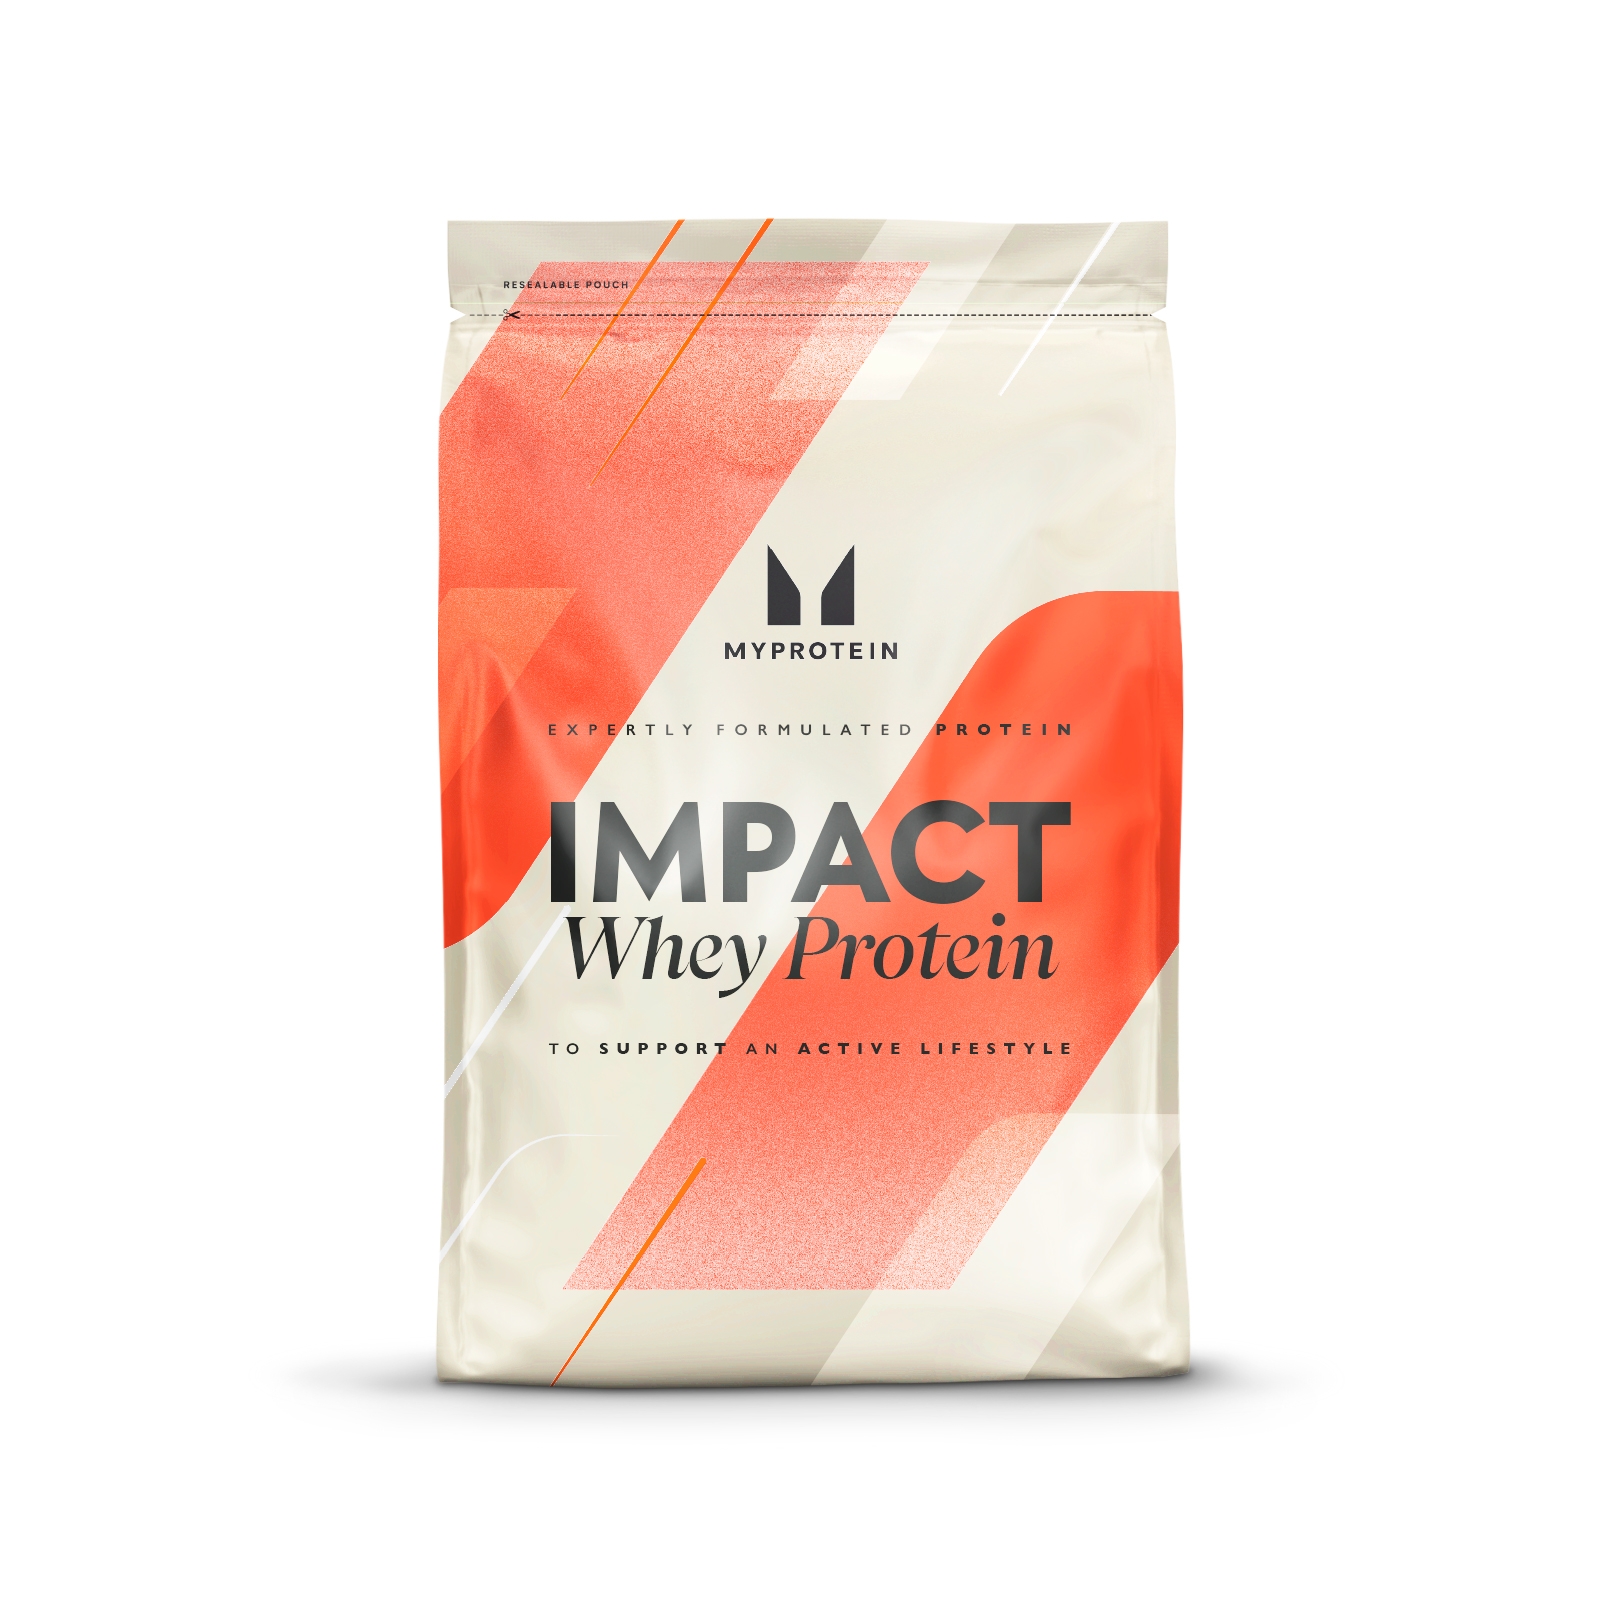 Myprotein Impact Whey Protein - 2.5kg - Chocolate Brownie